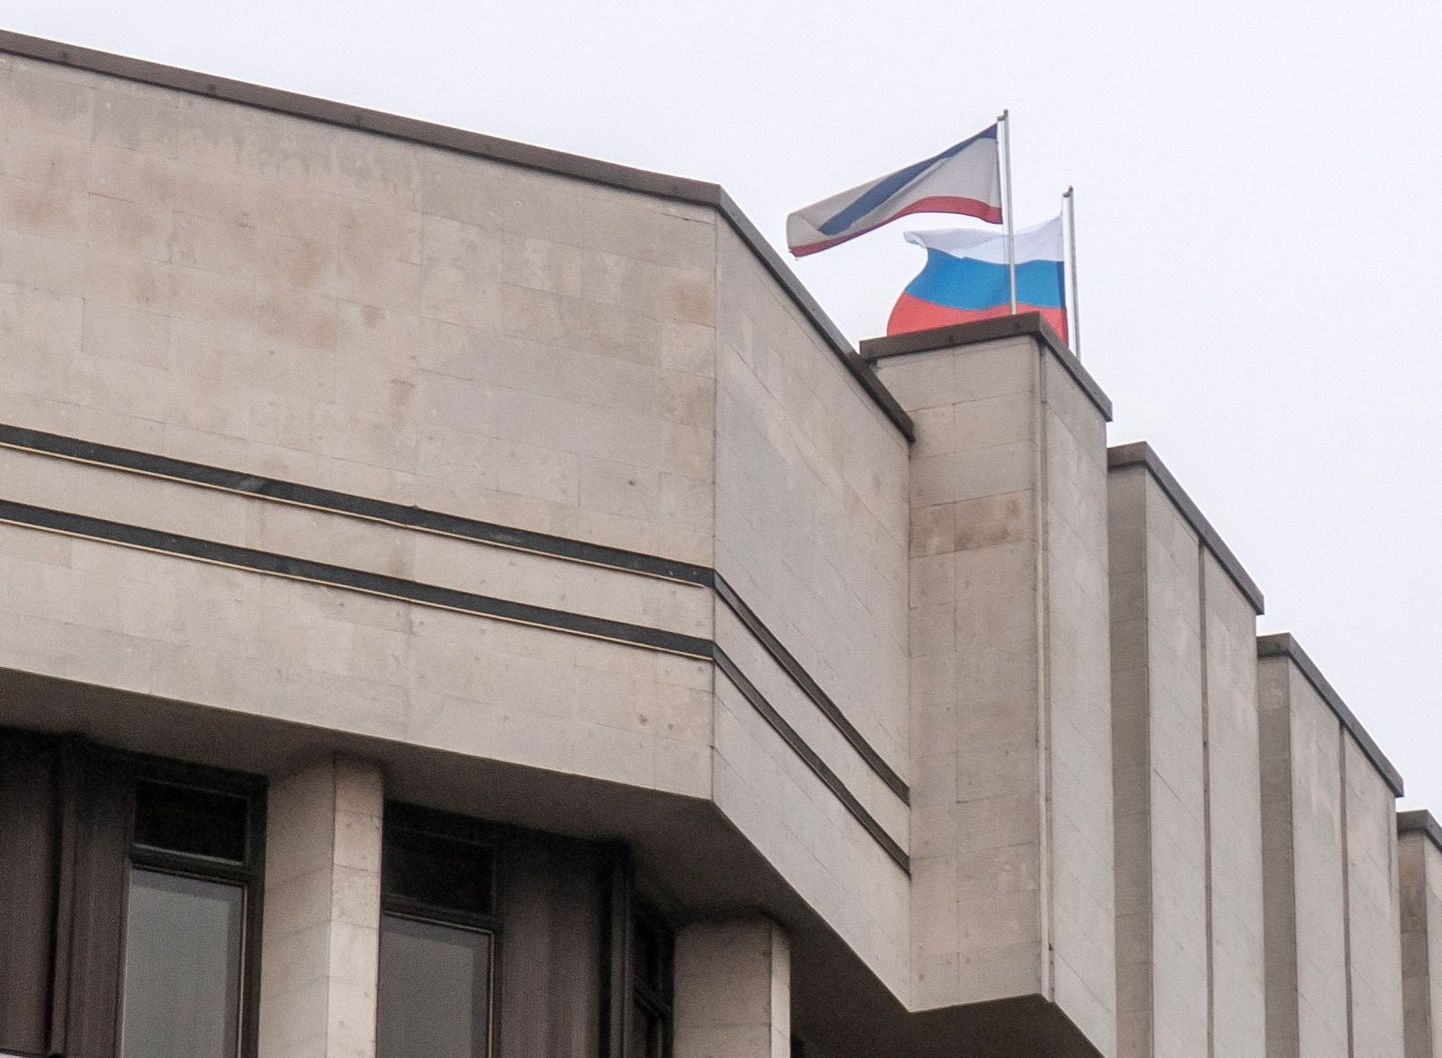 Krimmi ülemraada hoonele heisati 27. veebruaril Vene riigilipp.